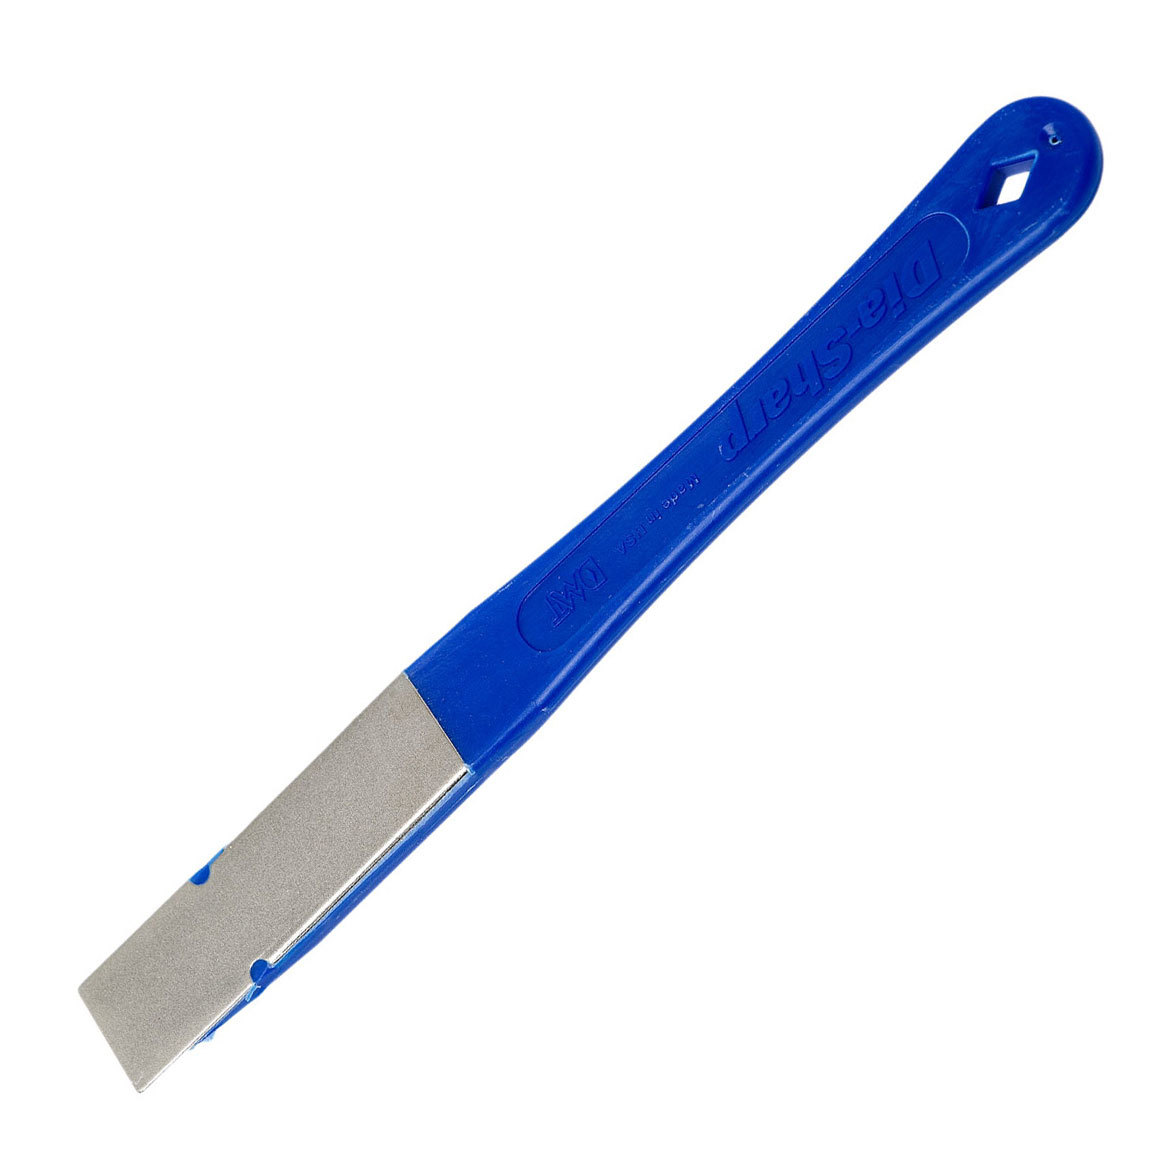 Алмазная точилка для ножей DMT® Coarse, 325 mesh, 45 micron алмазная точилка для ножей dmt® coarse 325 mesh 45 micron